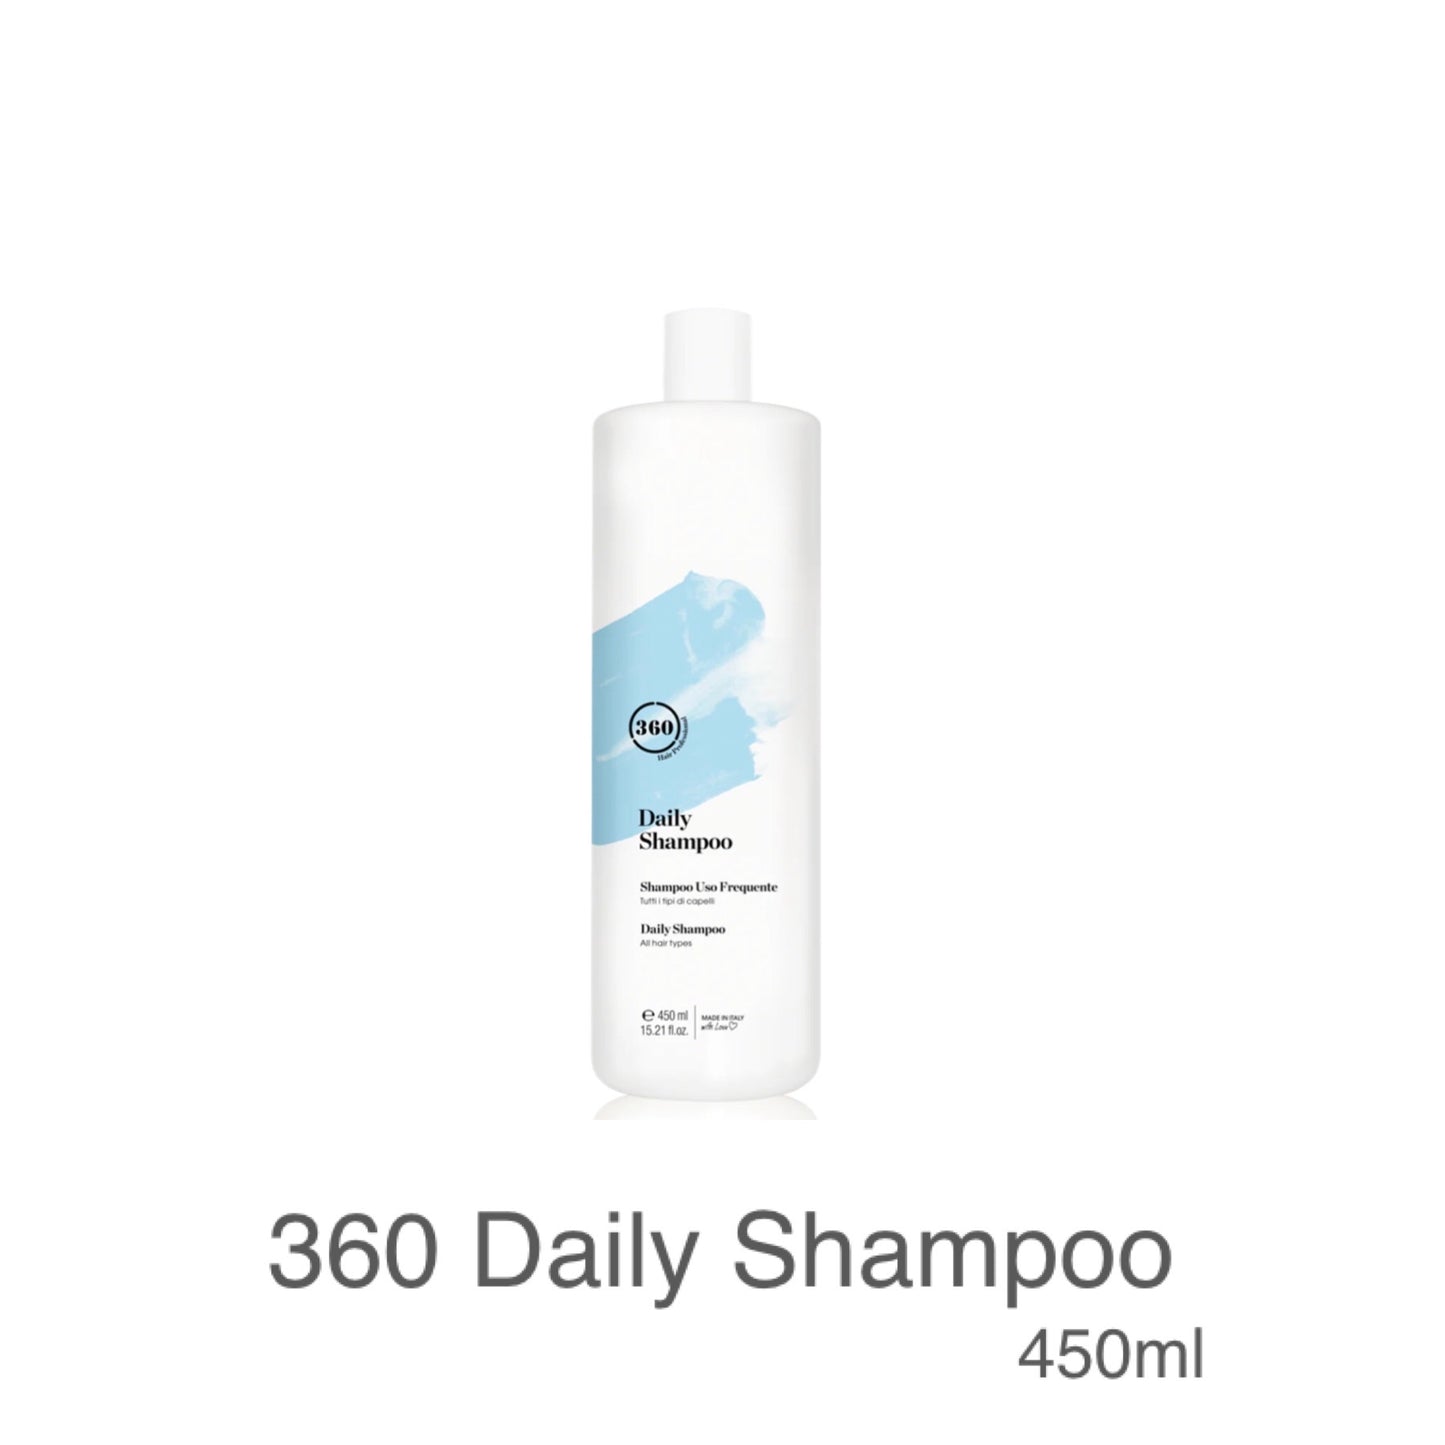 MHP- Italian Daily Shampoo